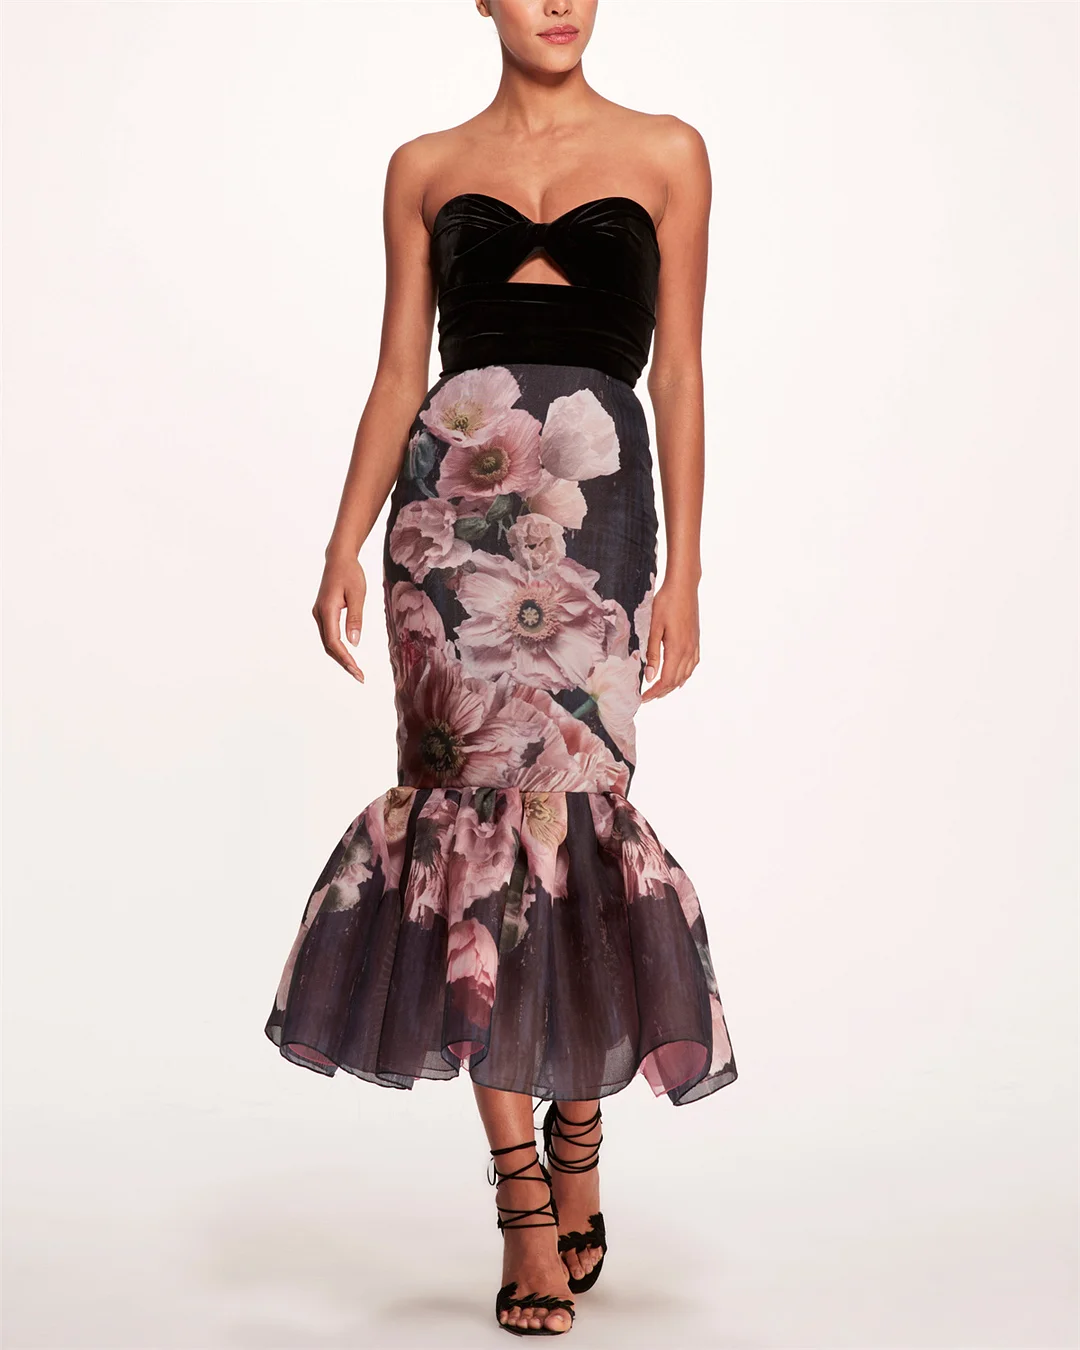 Women's Tube Top Flower Print Dress